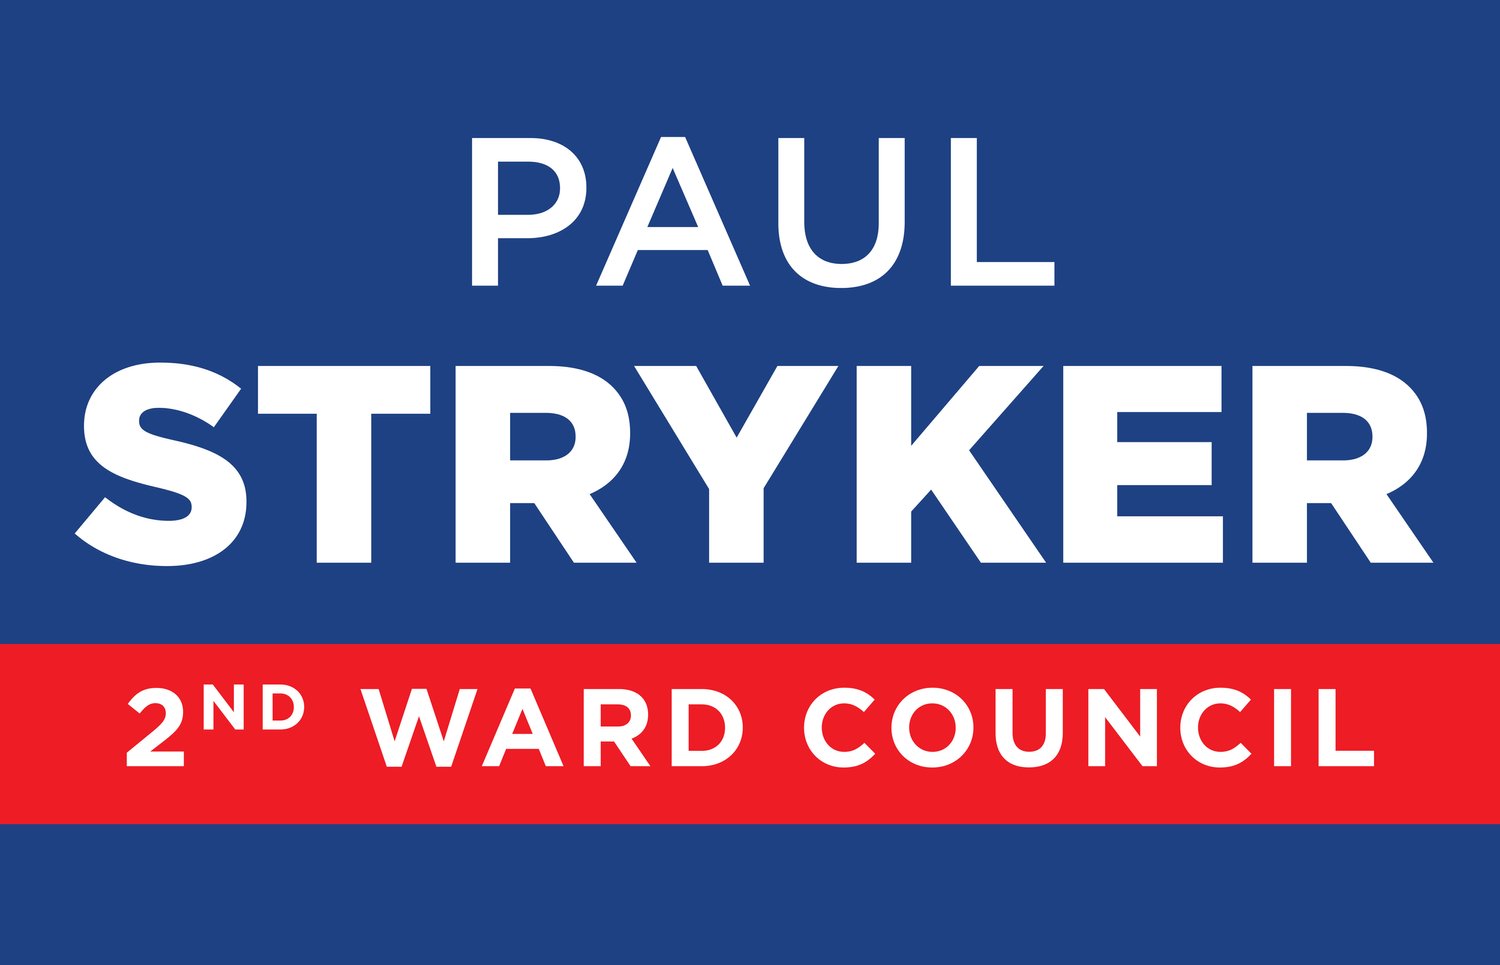 Paul Stryker for 2nd Ward Council in Ocean City, NJ